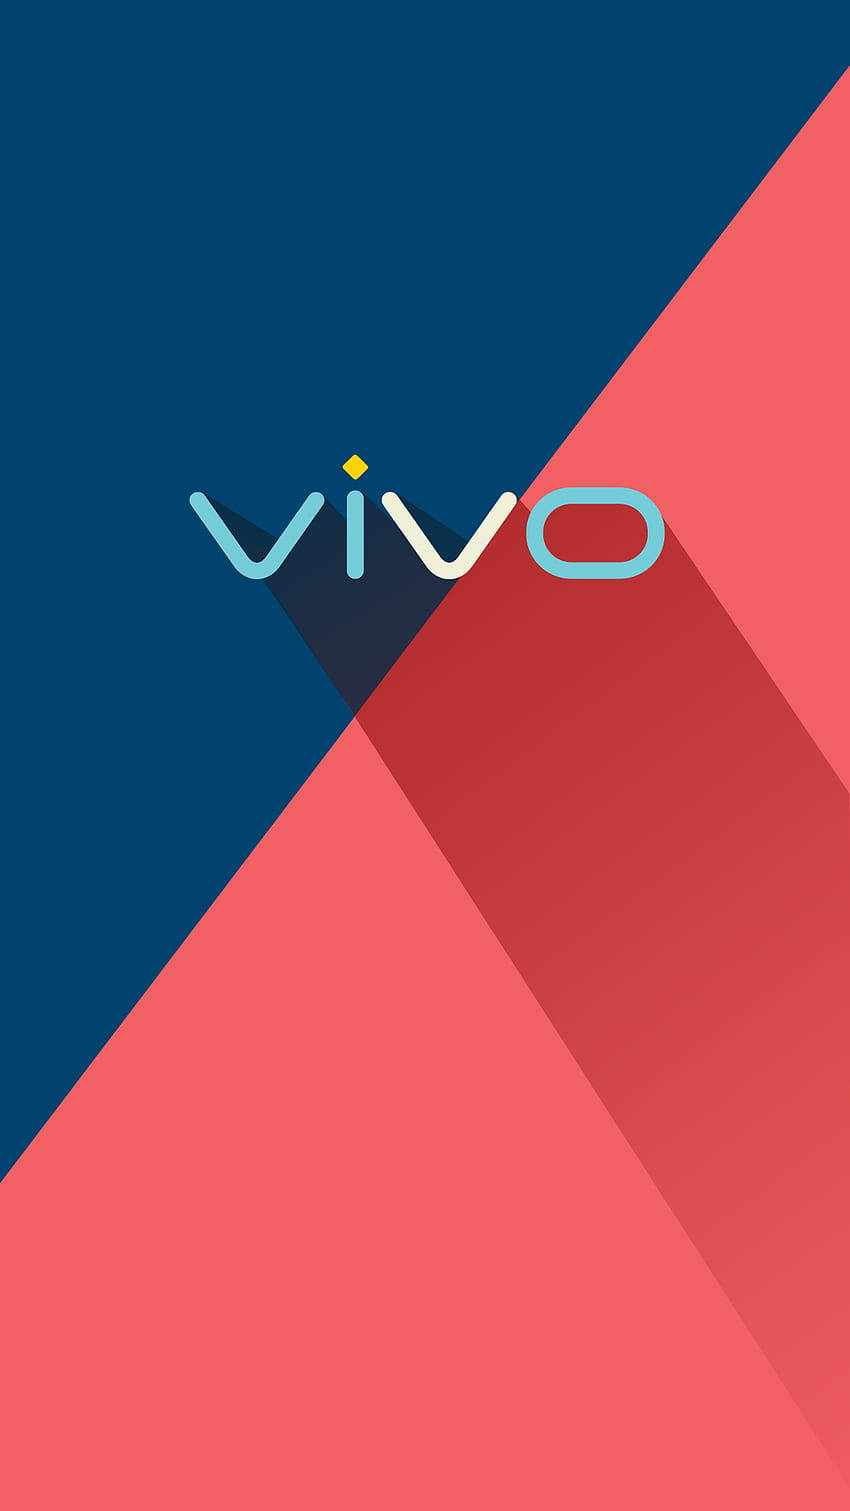 Free Vivo Logo Wallpaper Downloads, [100+] Vivo Logo Wallpapers for FREE |  